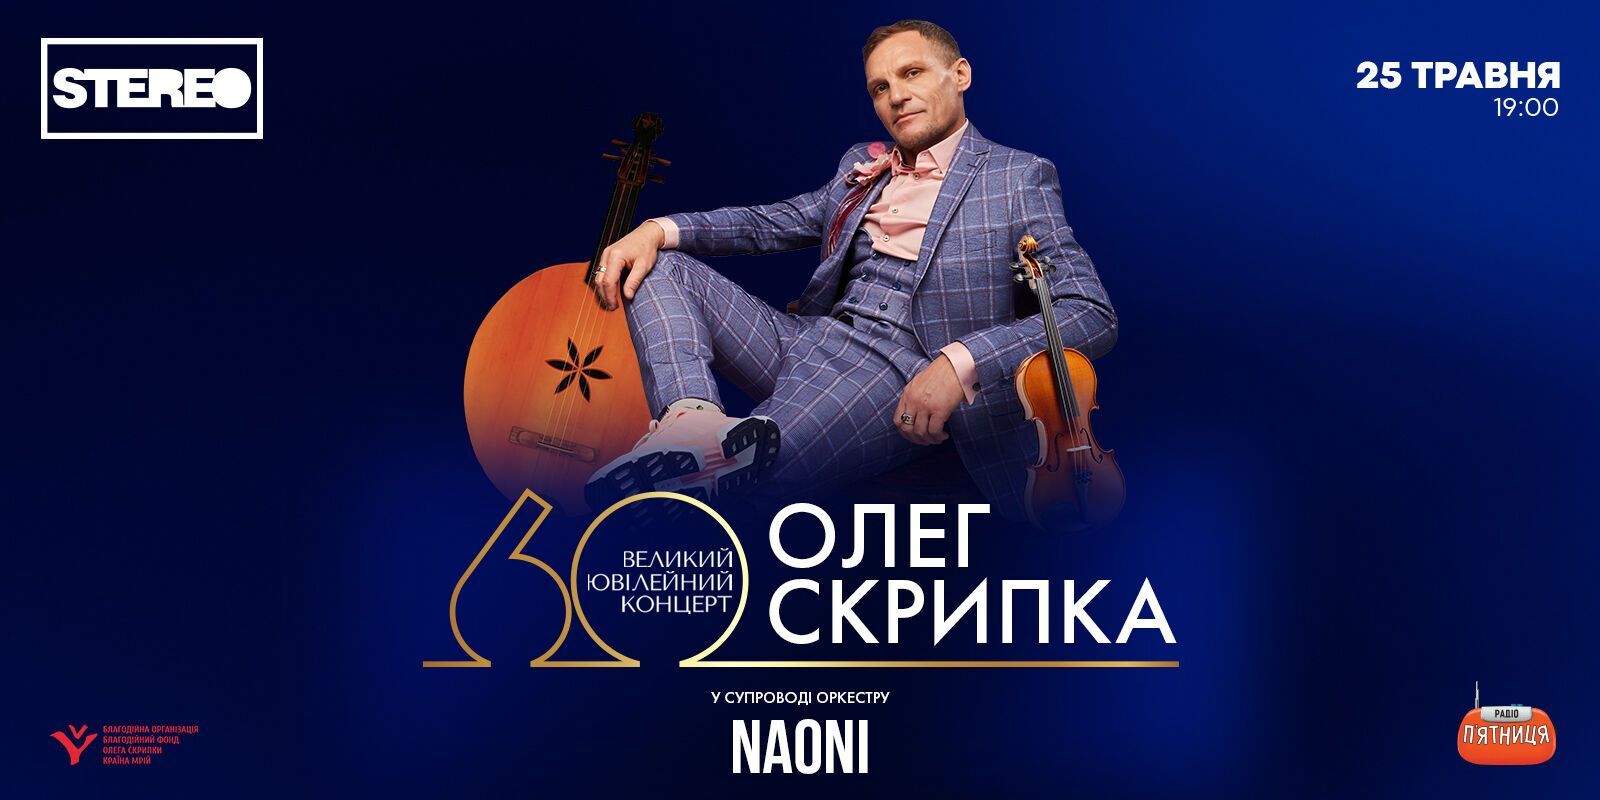 "Приходите, люди, на вечер в Клуб". Олег Скрипка сыграет большой юбилейный концерт в честь своего 60-летия